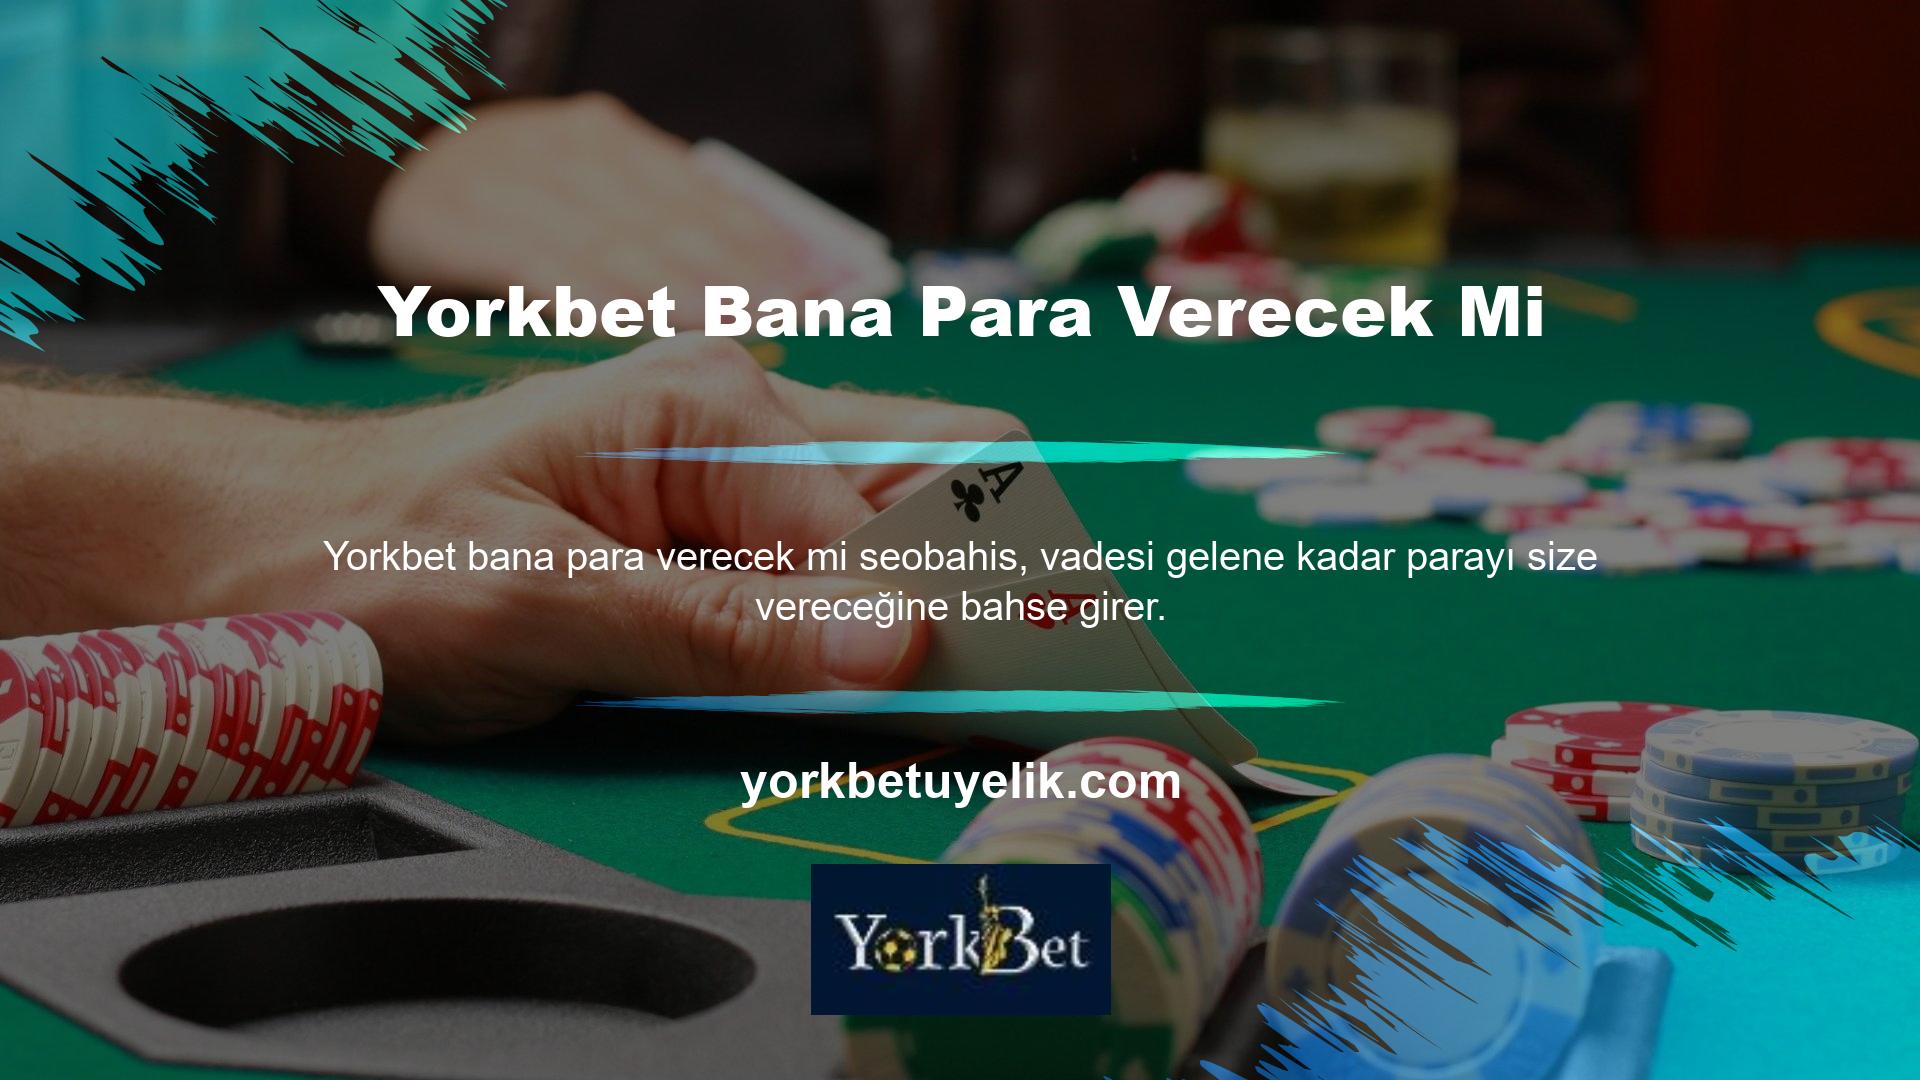 Yorkbet, yabancı bir casino sitesi olarak Türkiye'de oynamaya devam etmek için birkaç adım attı